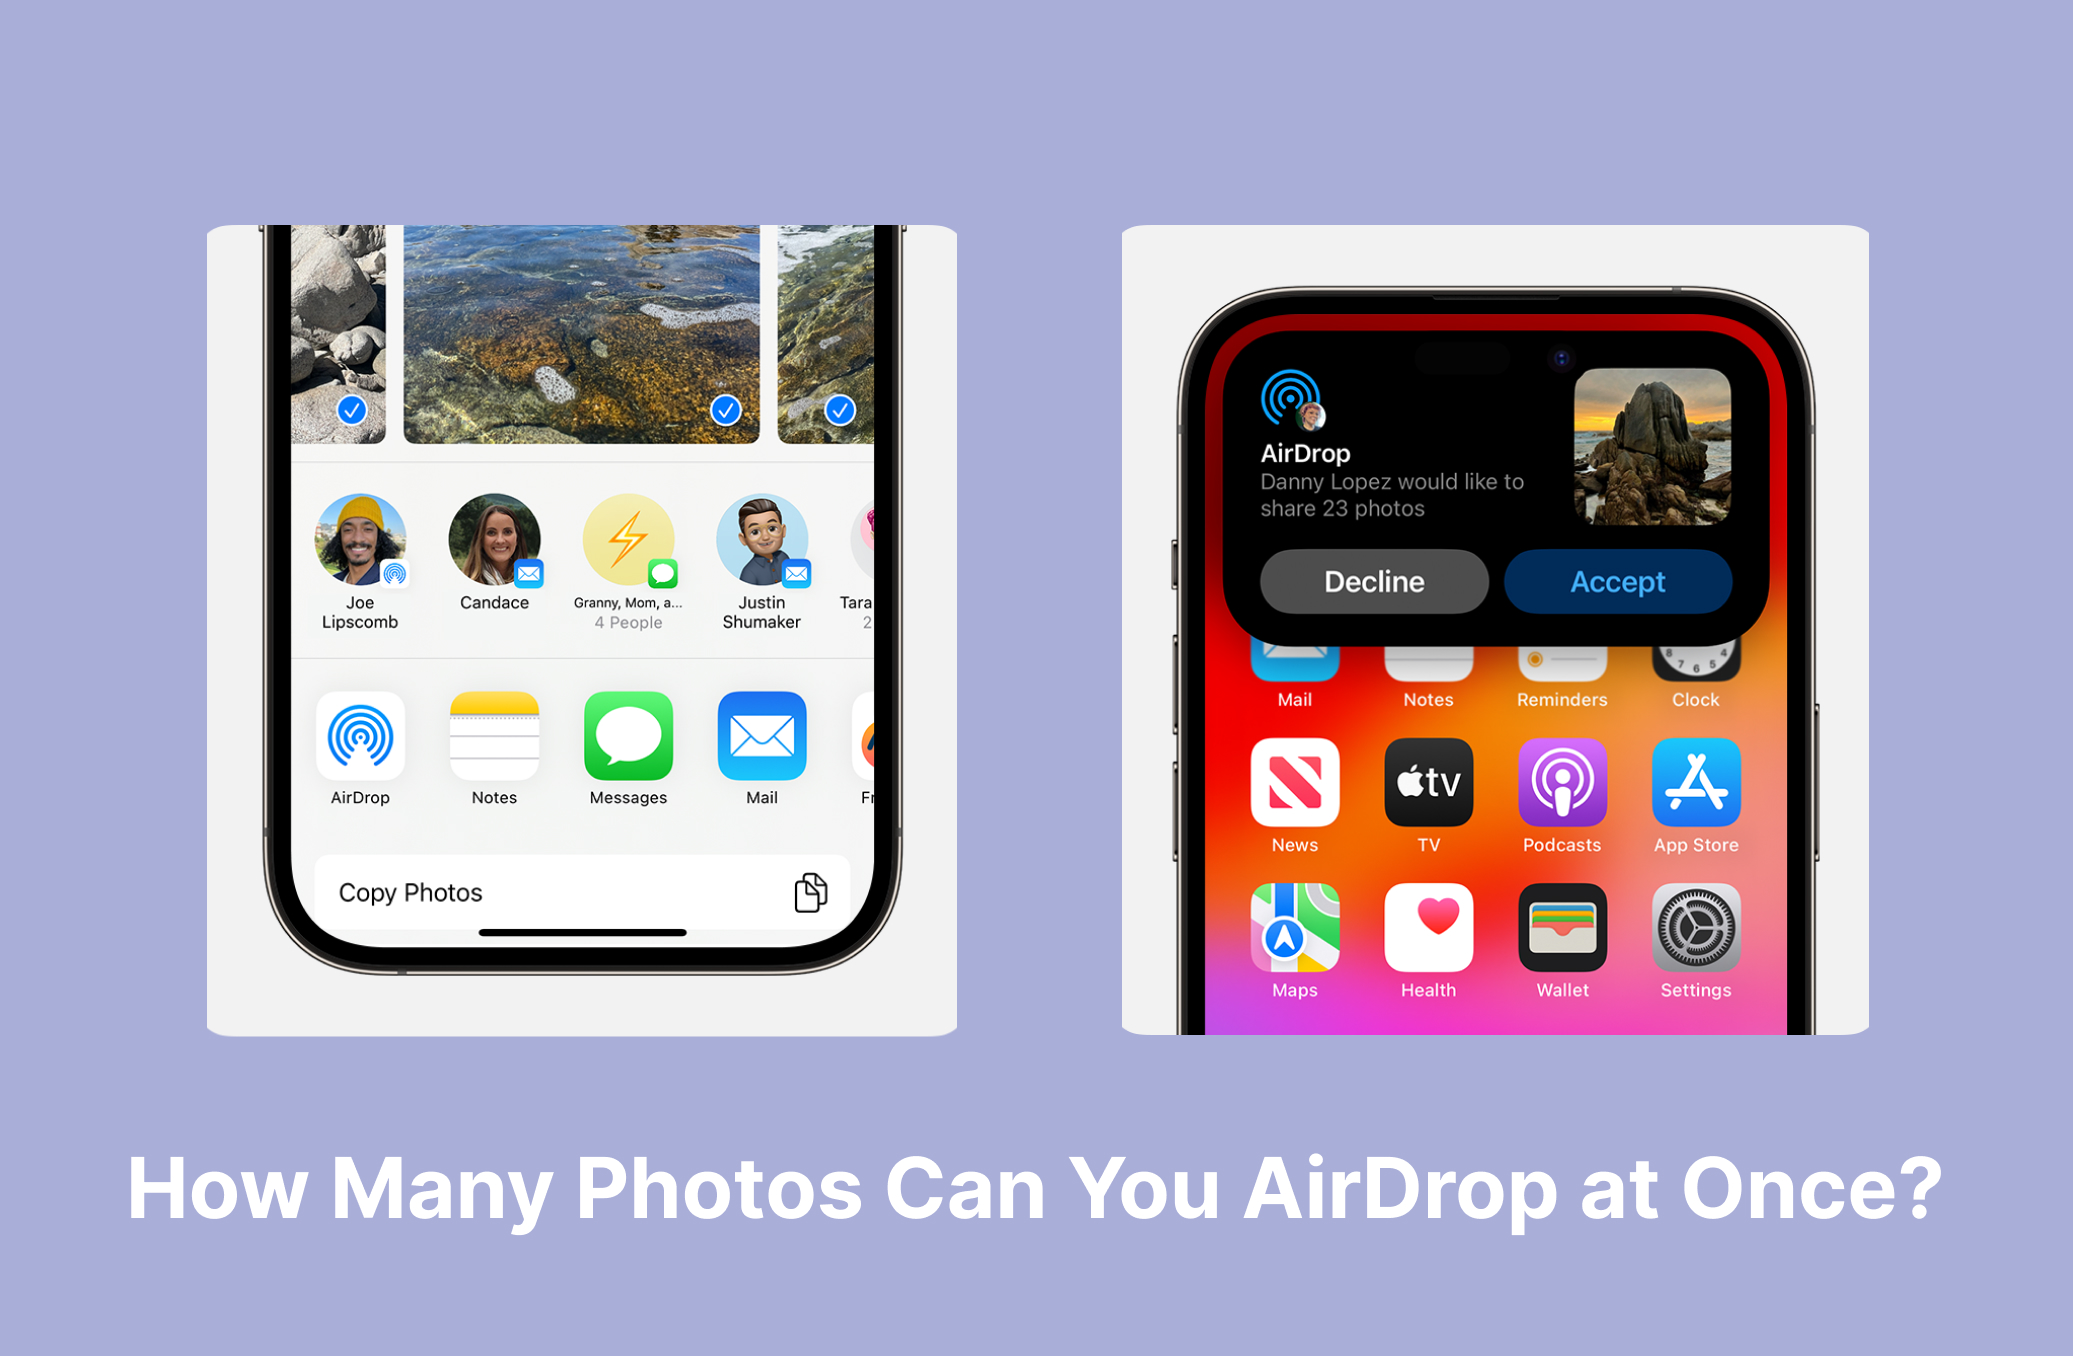 Quantas fotos você pode usar no AirDrop de uma vez?